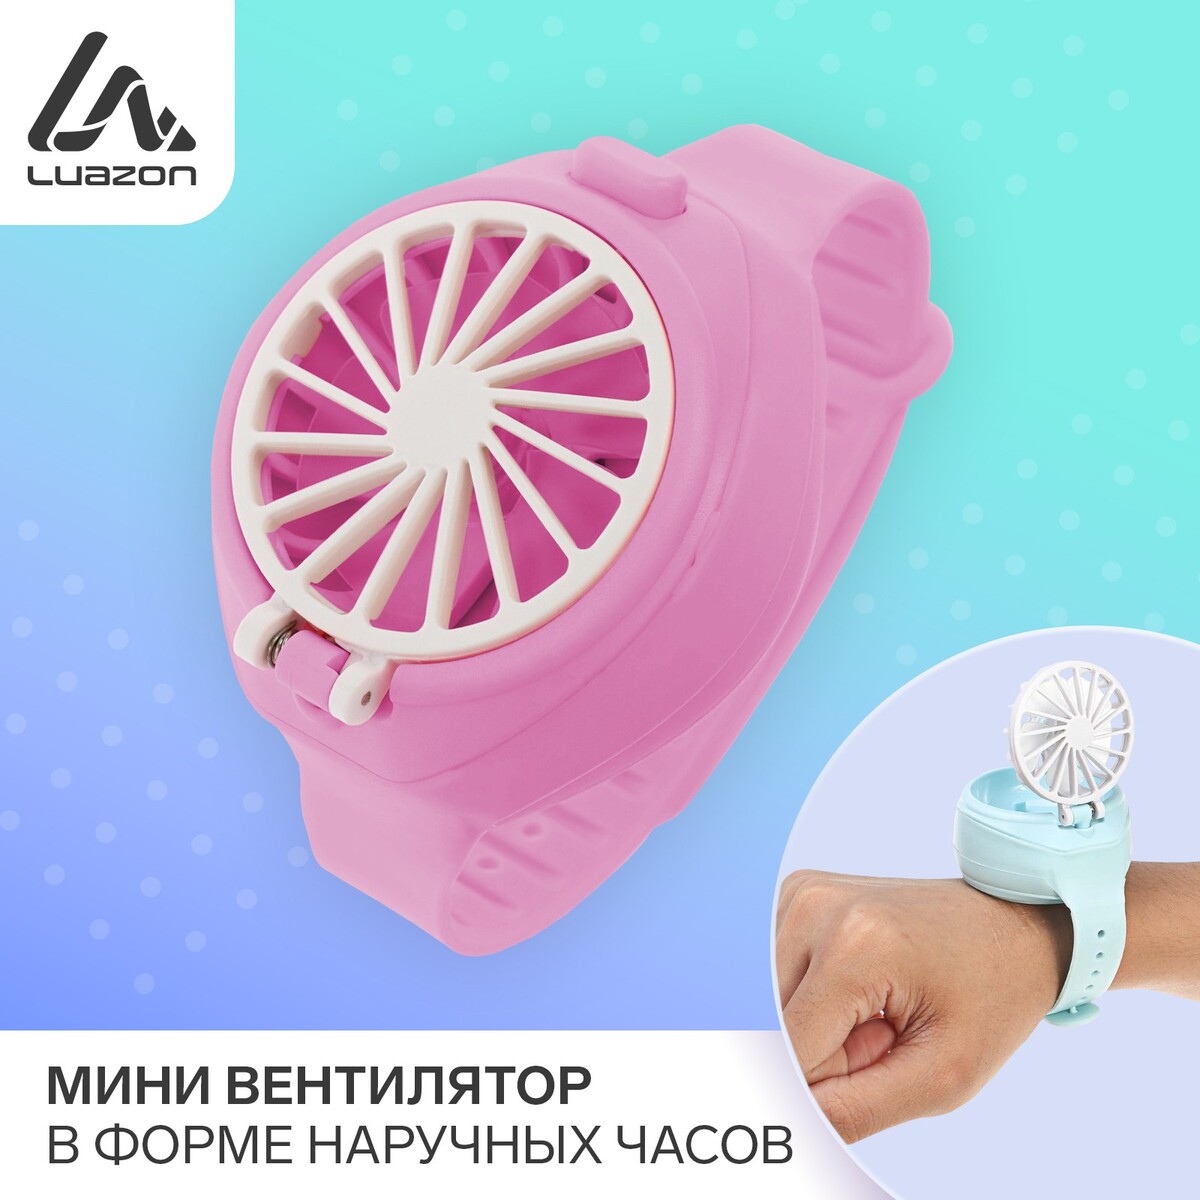 Мини вентилятор в форме наручных часов lof-10, 3 скорости, поворотный,  розовый No brand 03570305: купить за 620 руб в интернет магазине с  бесплатной доставкой